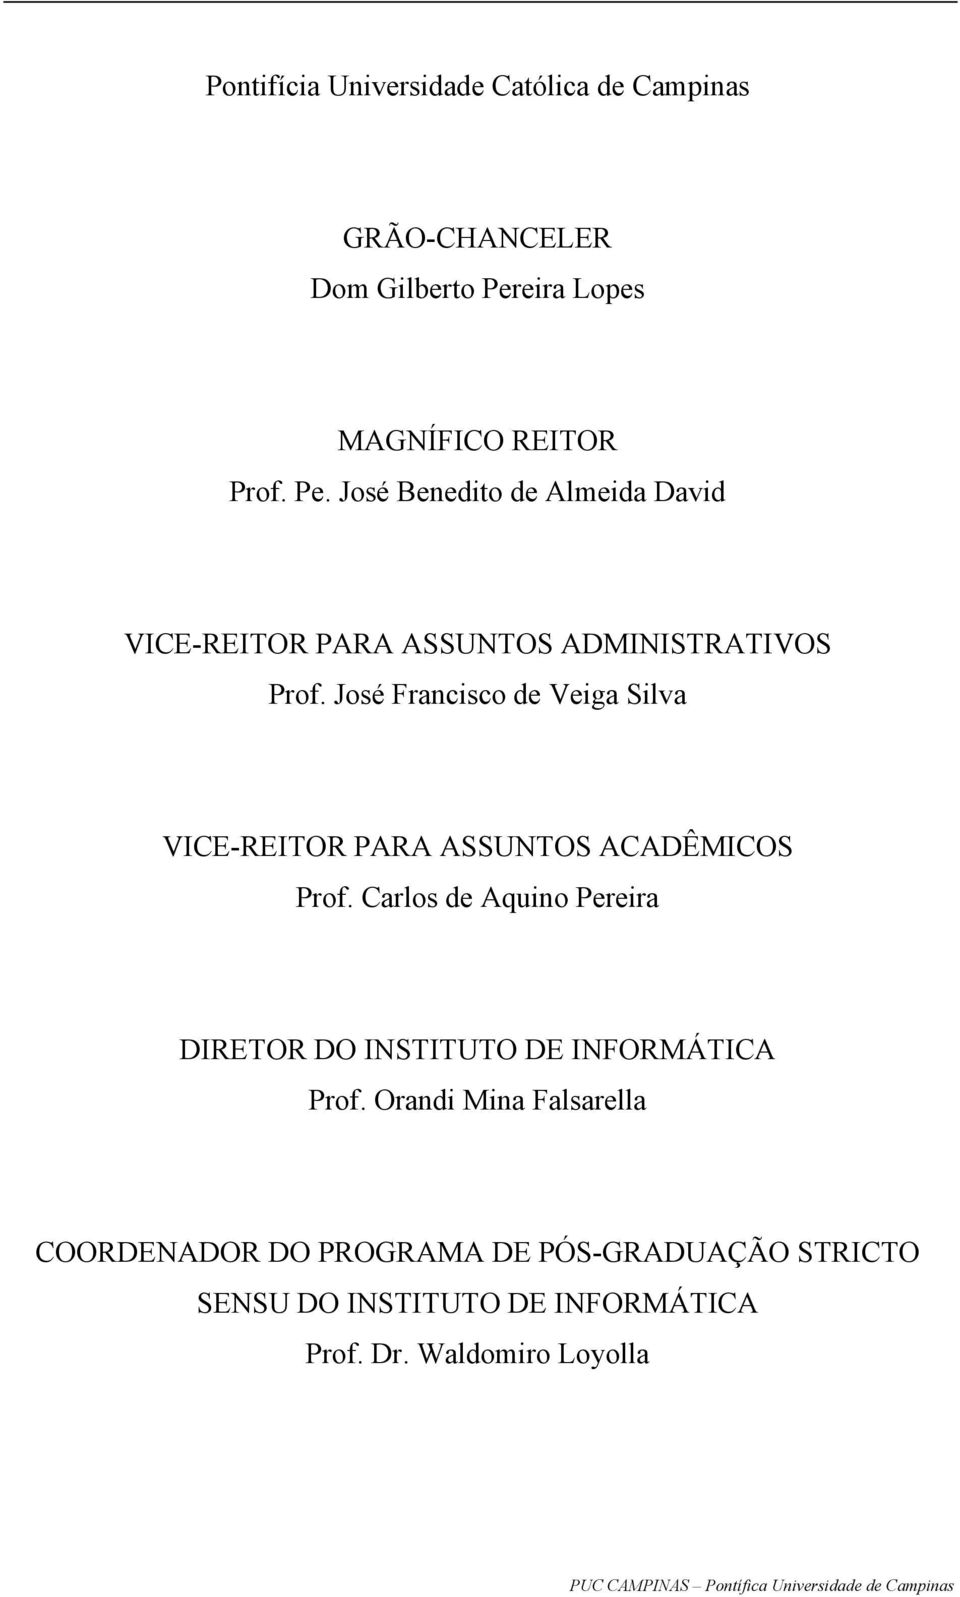 José Francisco de Veiga Silva VICE-REITOR PARA ASSUNTOS ACADÊMICOS Prof.